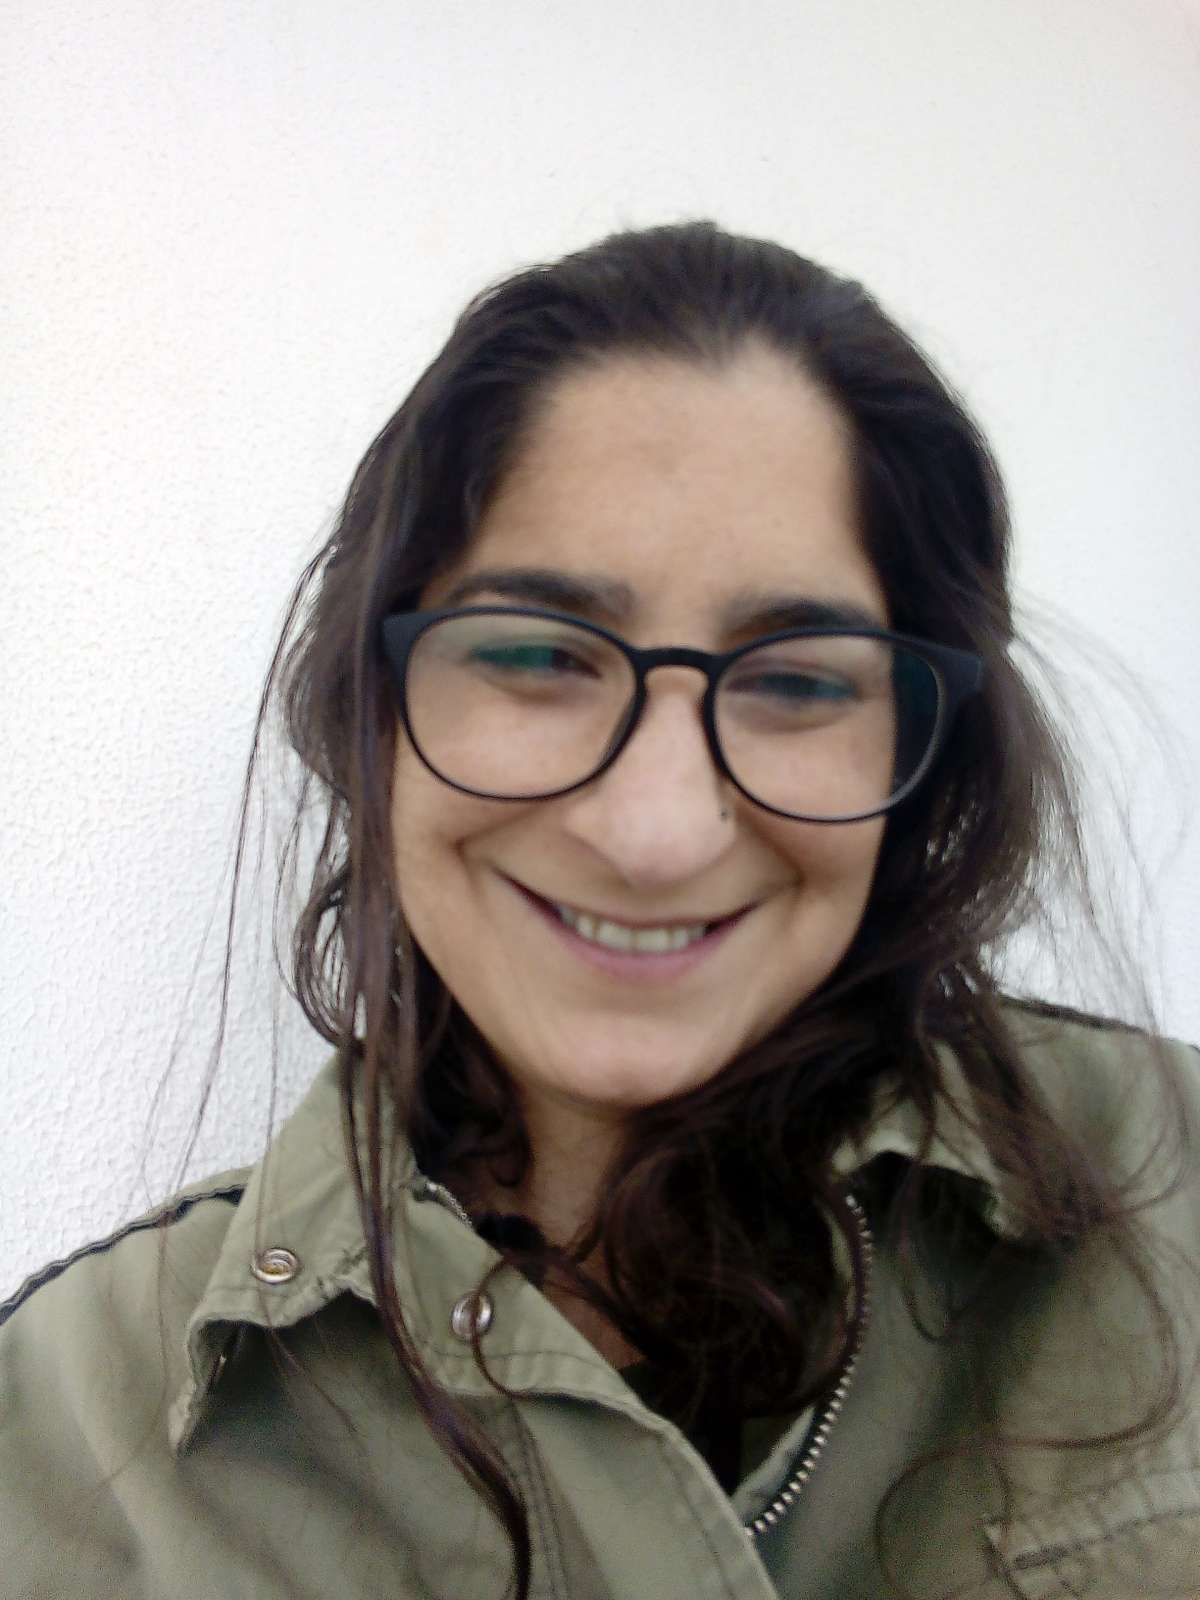 Cristina Martins - Cadaval - Organização da Casa